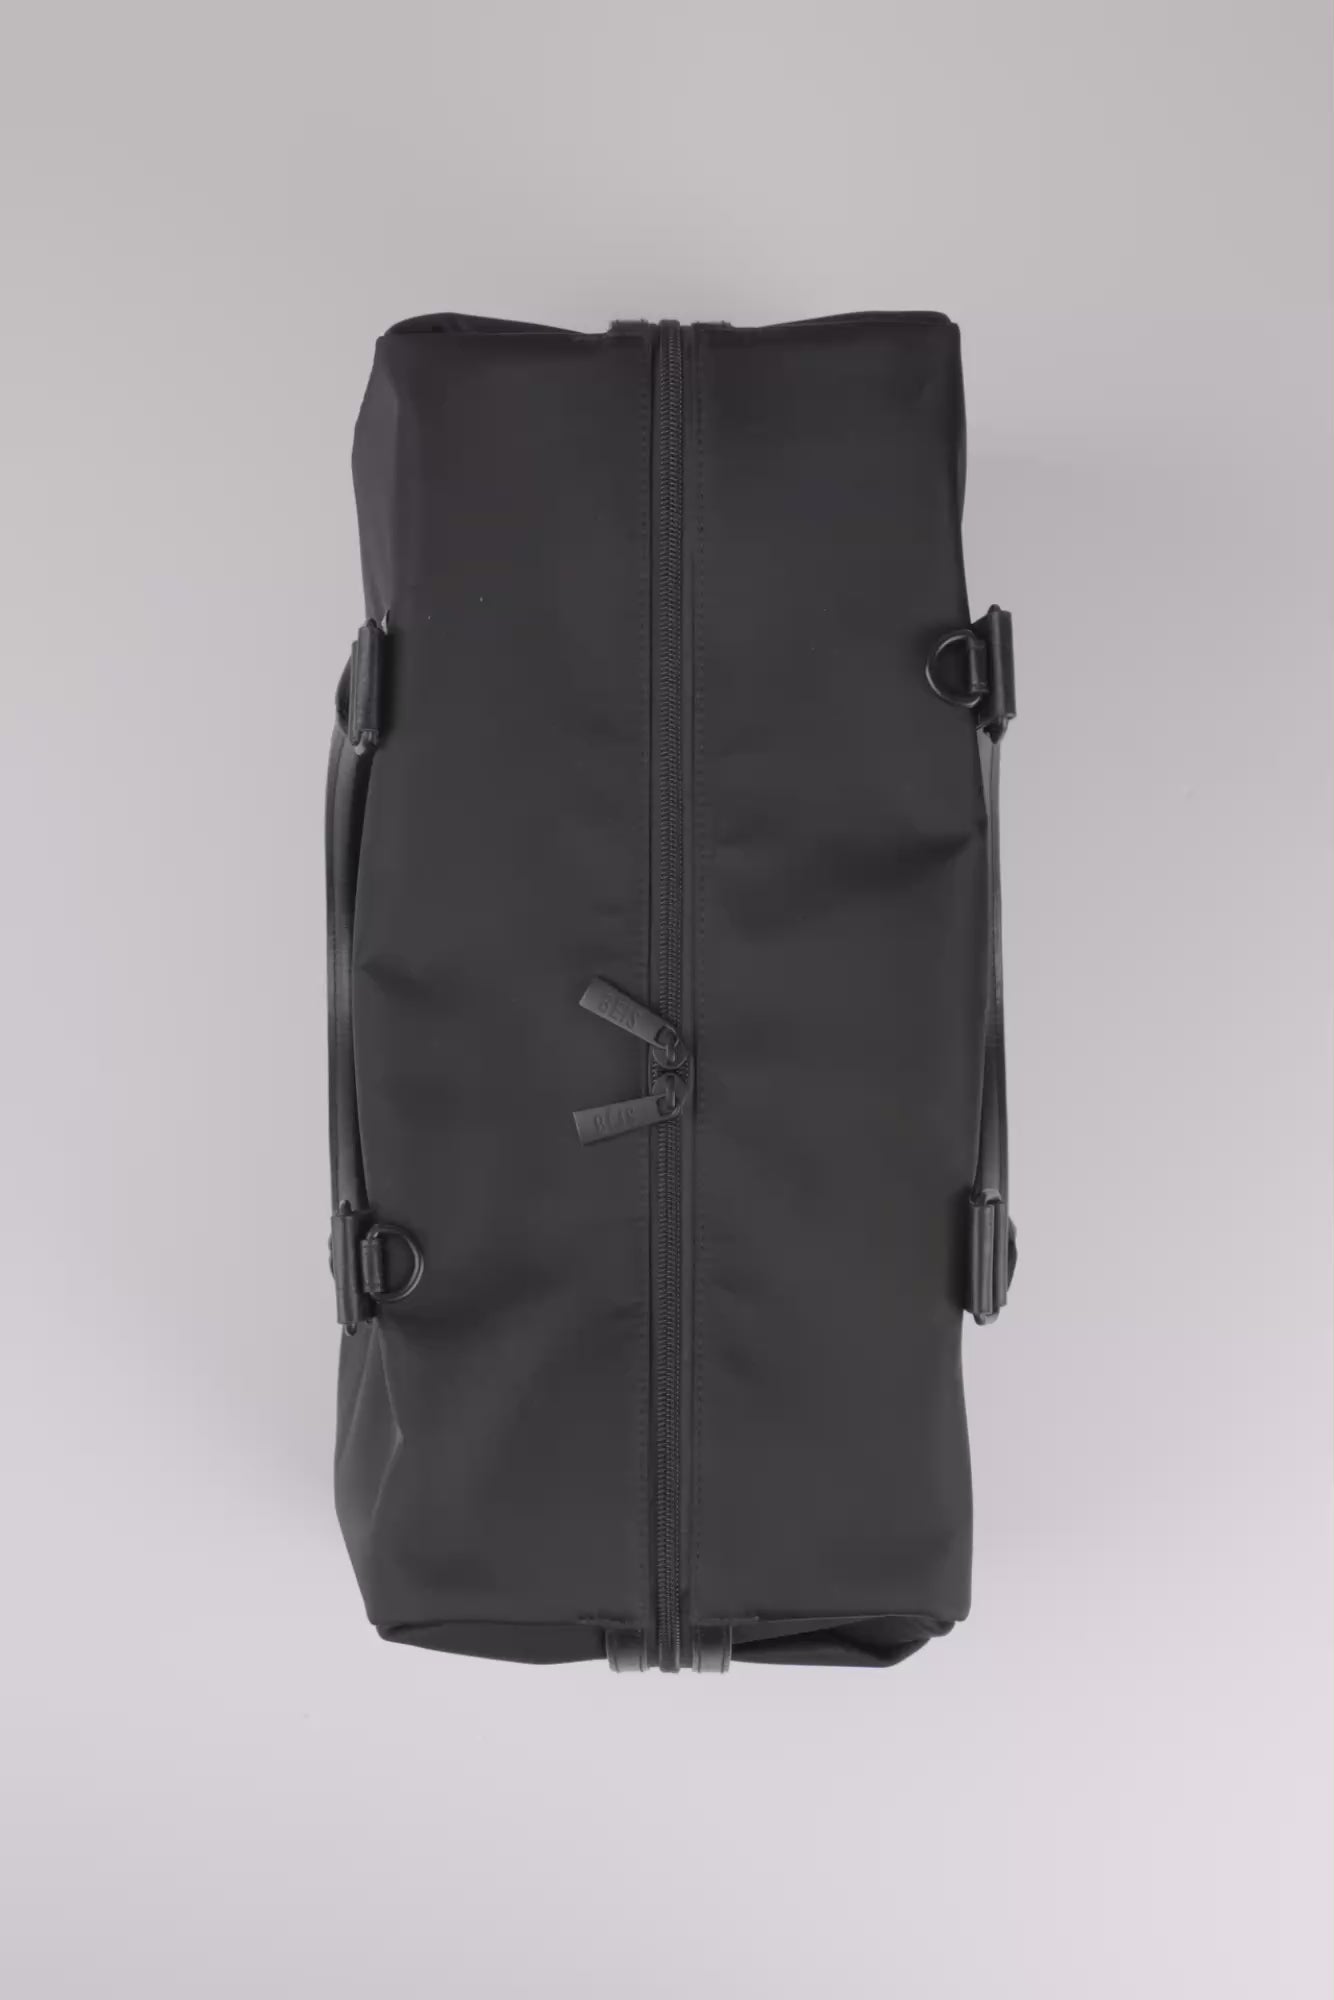 Men's plaid travel bag large-capacity short-distance business